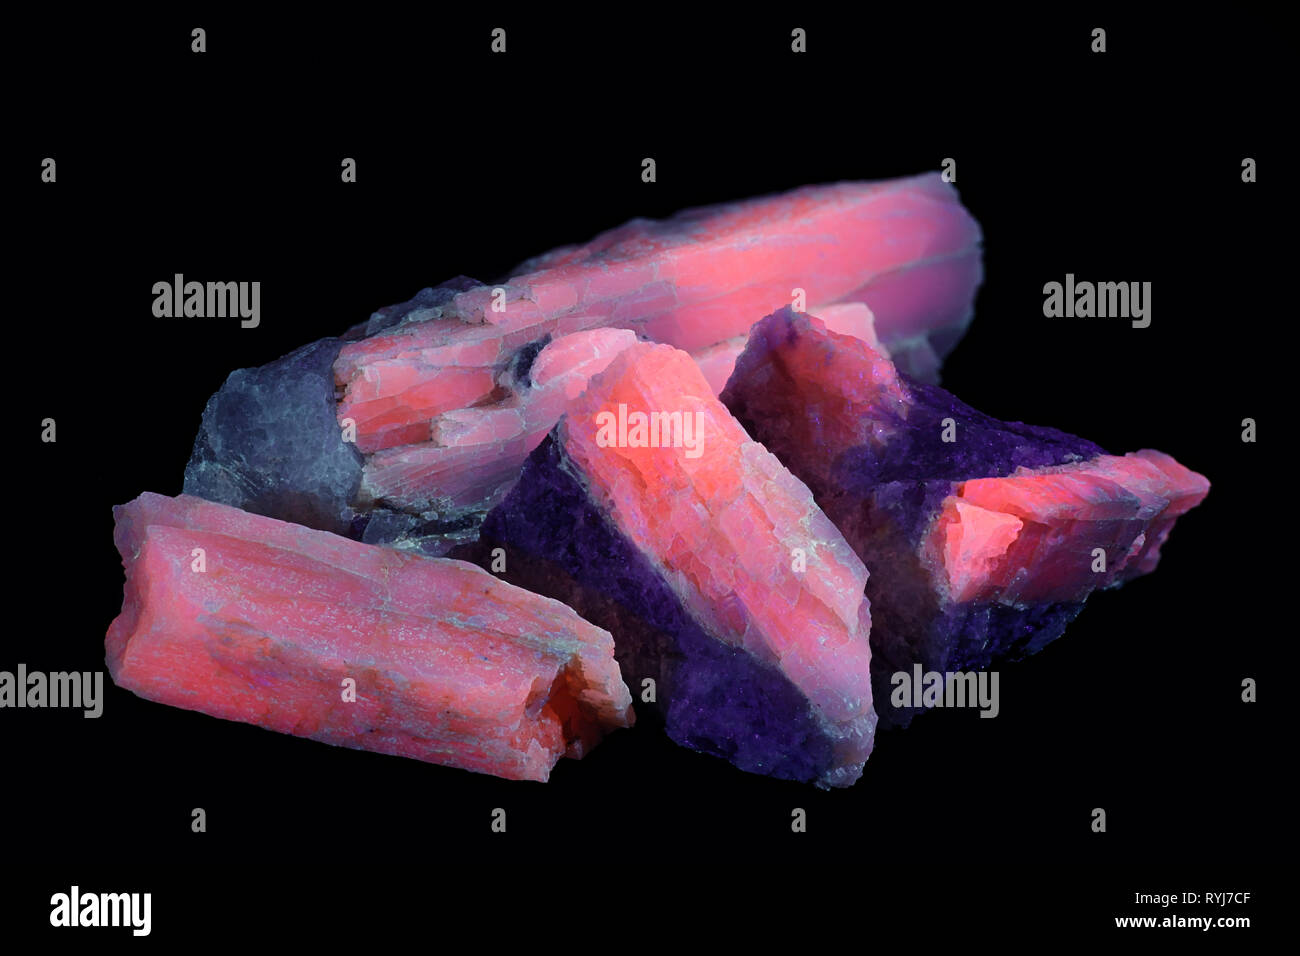 Les cristaux du minerai de lithium industriel majeur le spodumène montrant la fluorescence rouge dans la lumière ultraviolette (365 nm). À partir de l'échantillon Haapaluoma en Finlande. Banque D'Images